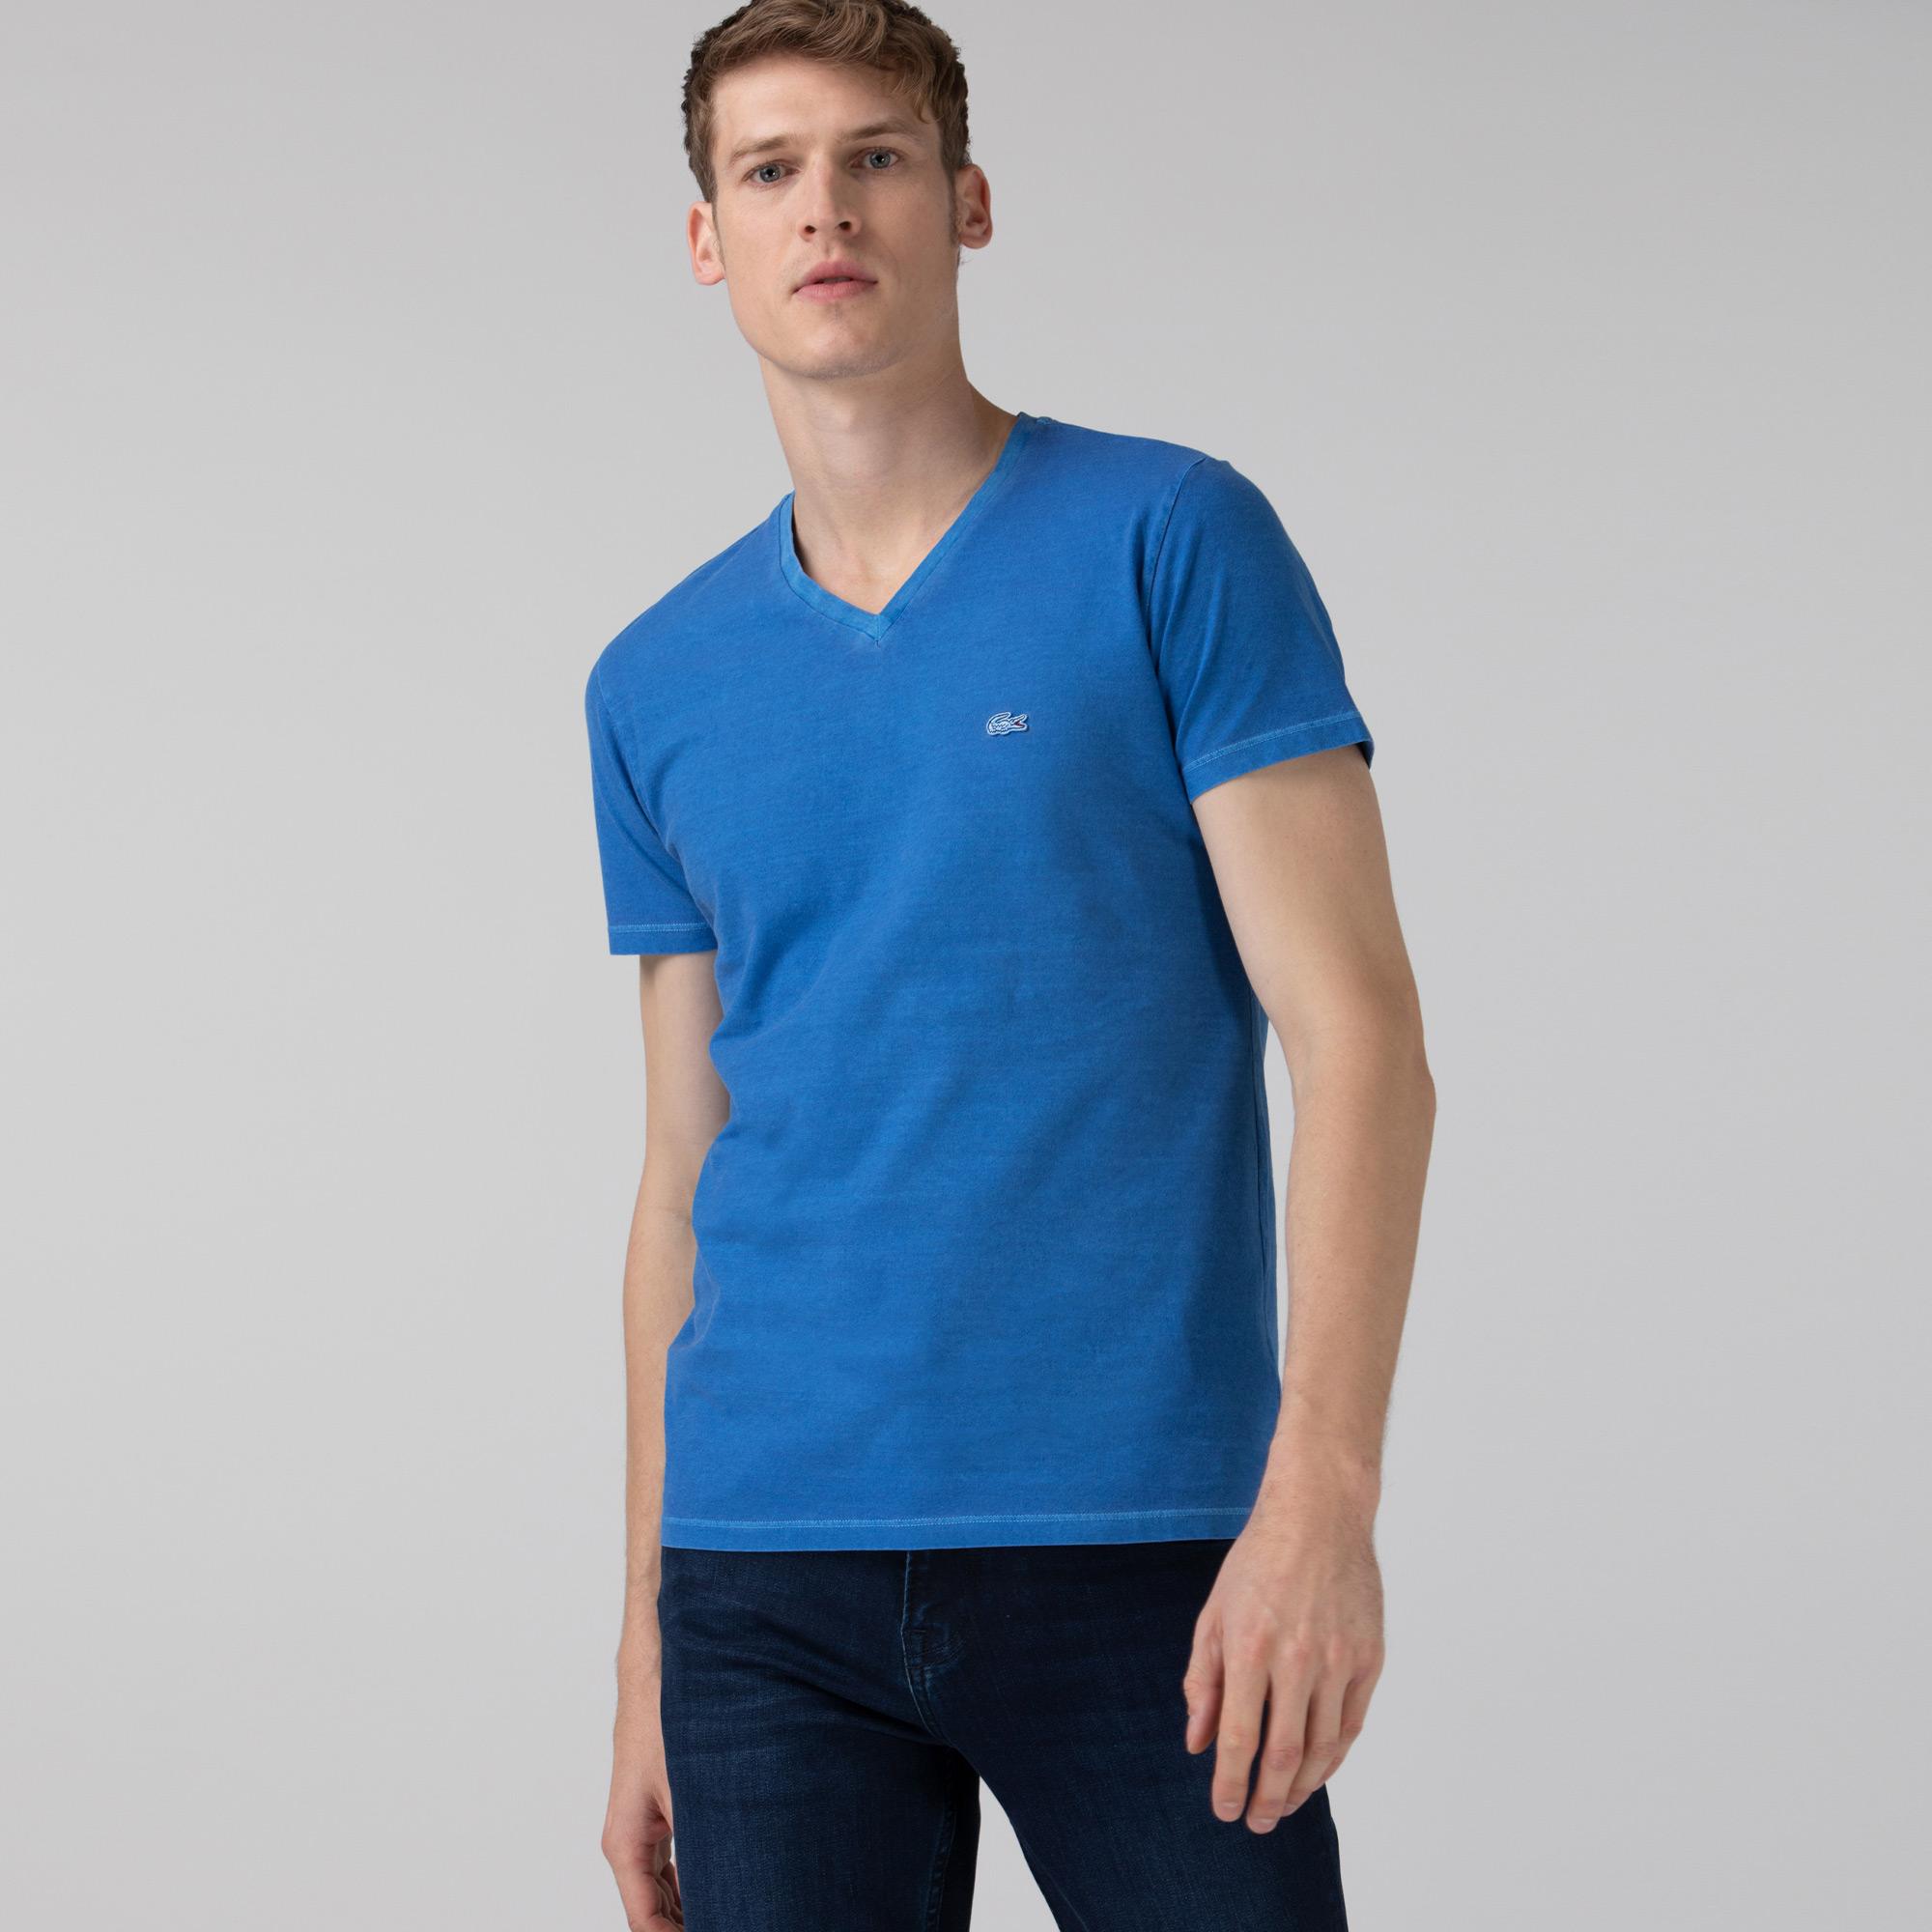 Lacoste Erkek Slim Fit V Yaka Mavi T-Shirt. 4